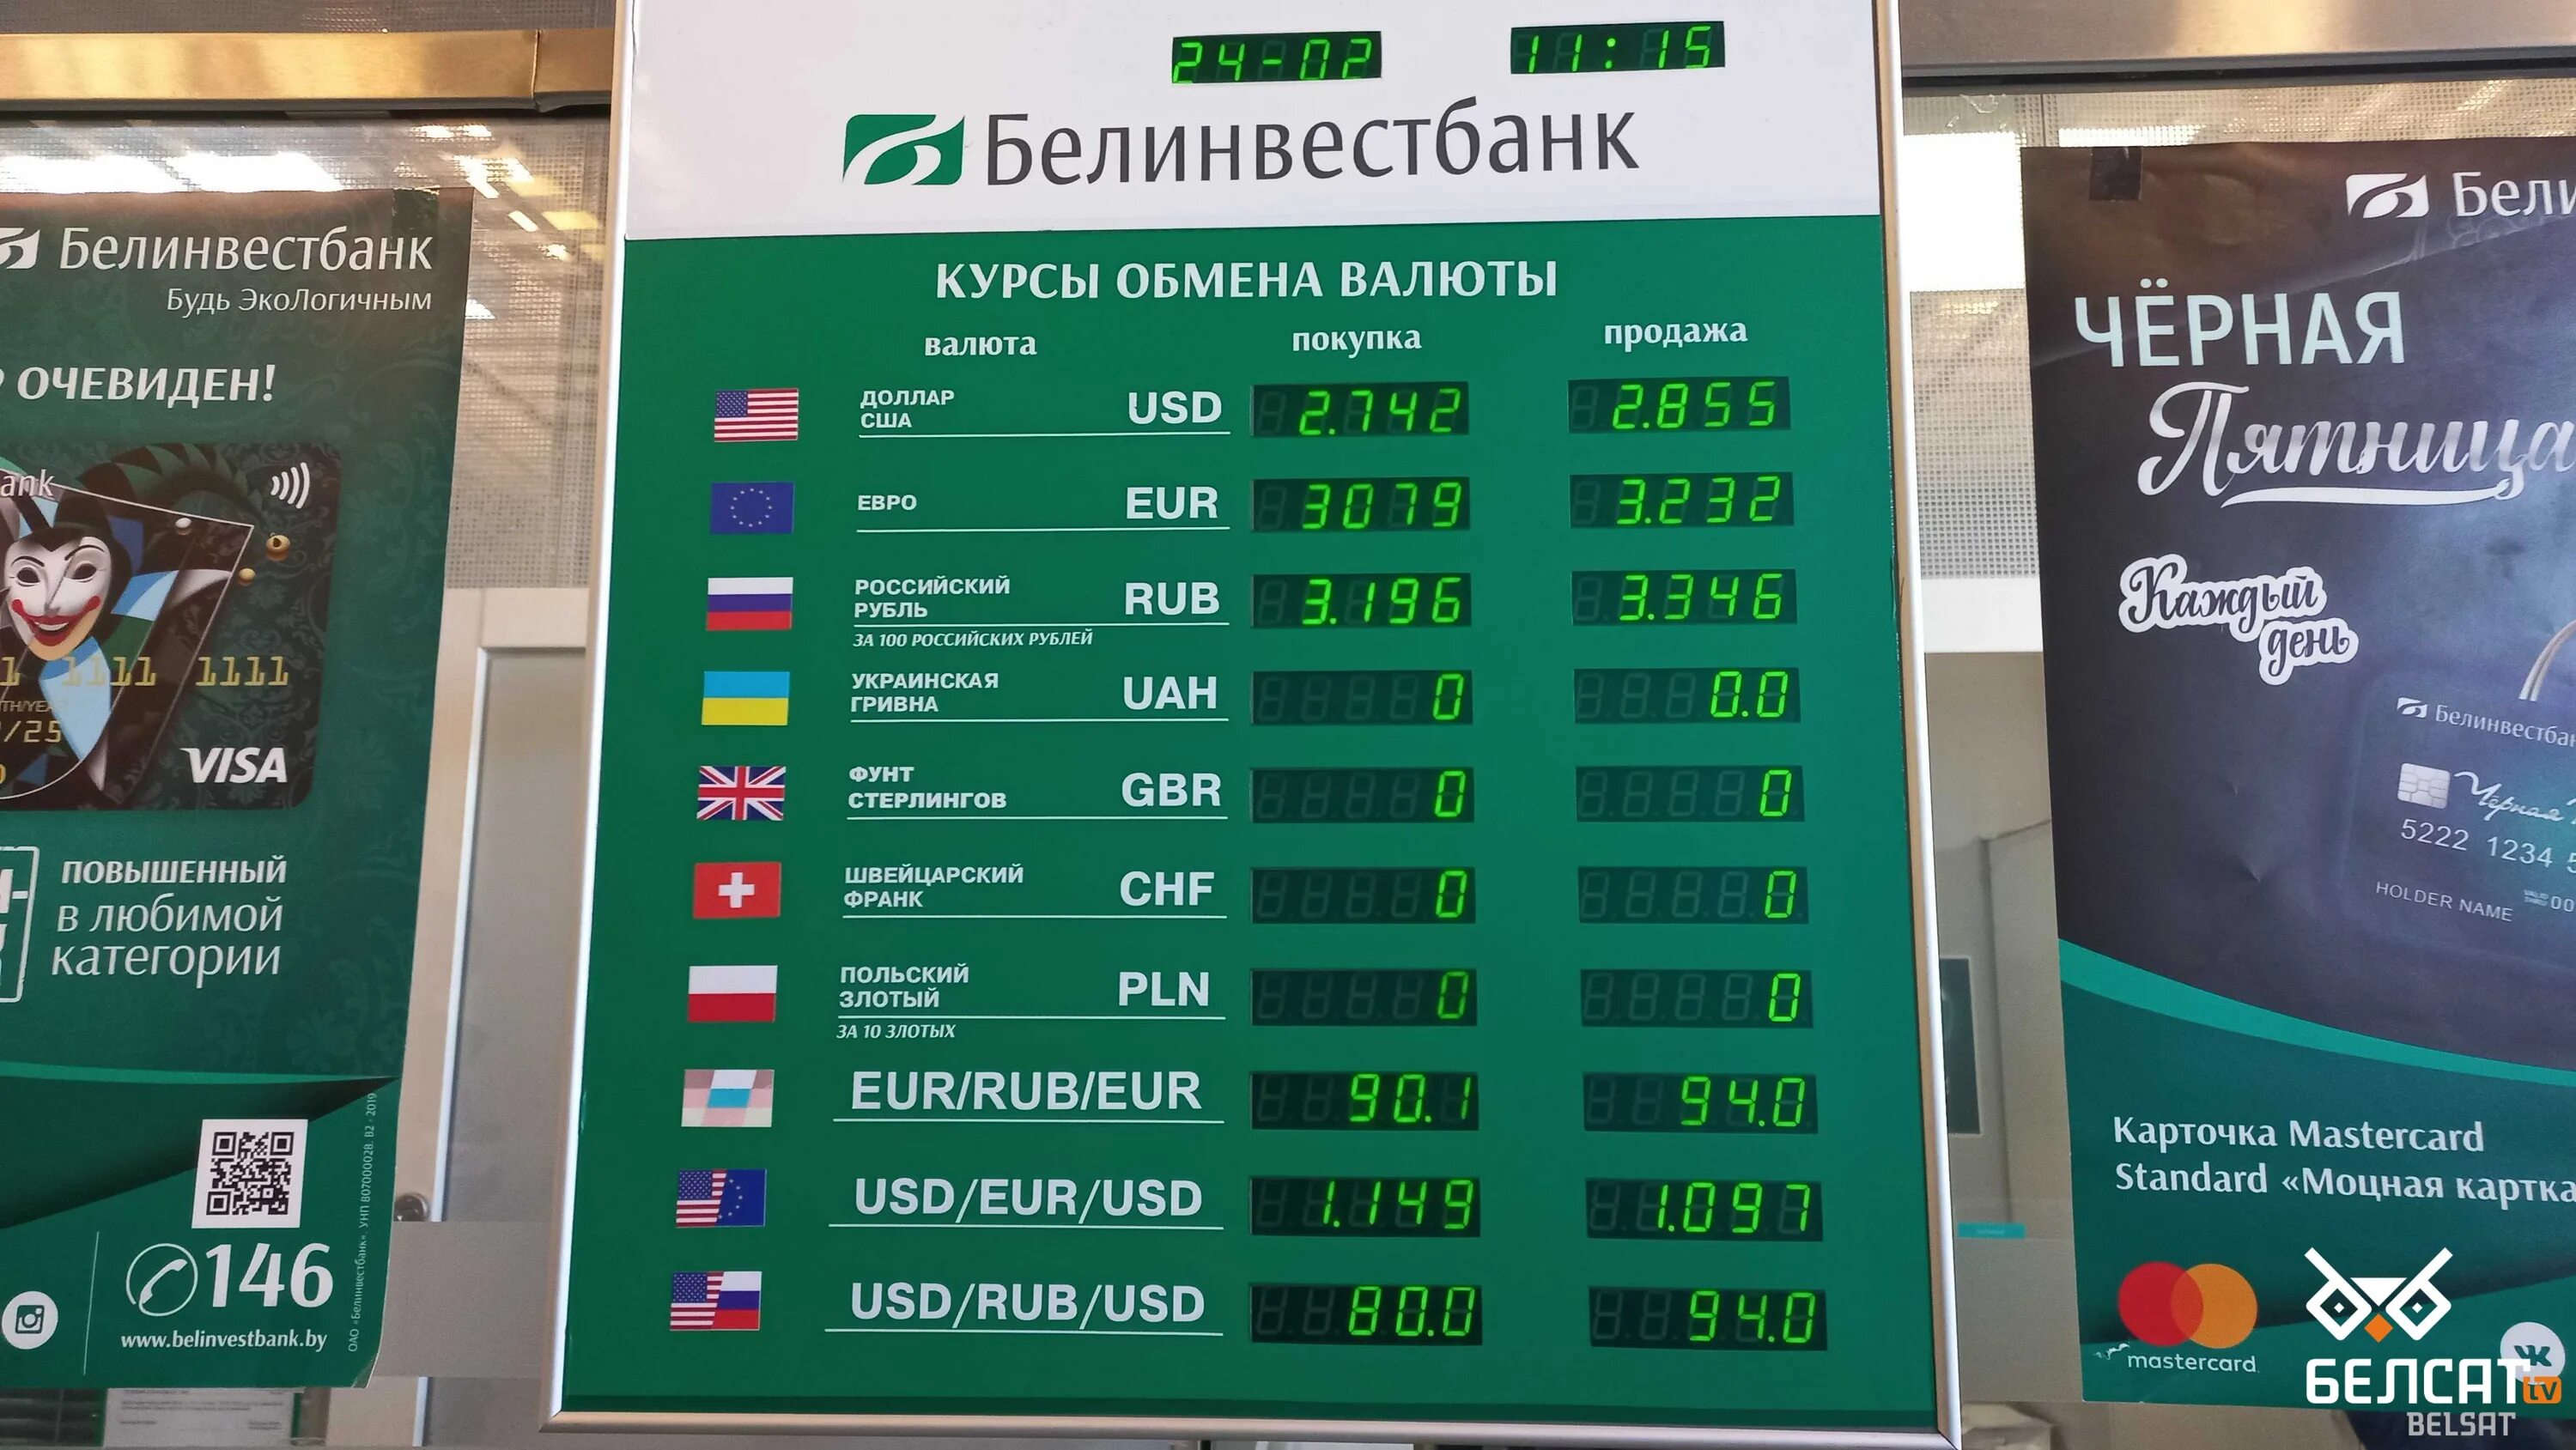 Курсы валют в обменниках. Курсы валют. Курсы валют на сегодня. Курсы валют в банках. Курс рубля в обменных пунктах.